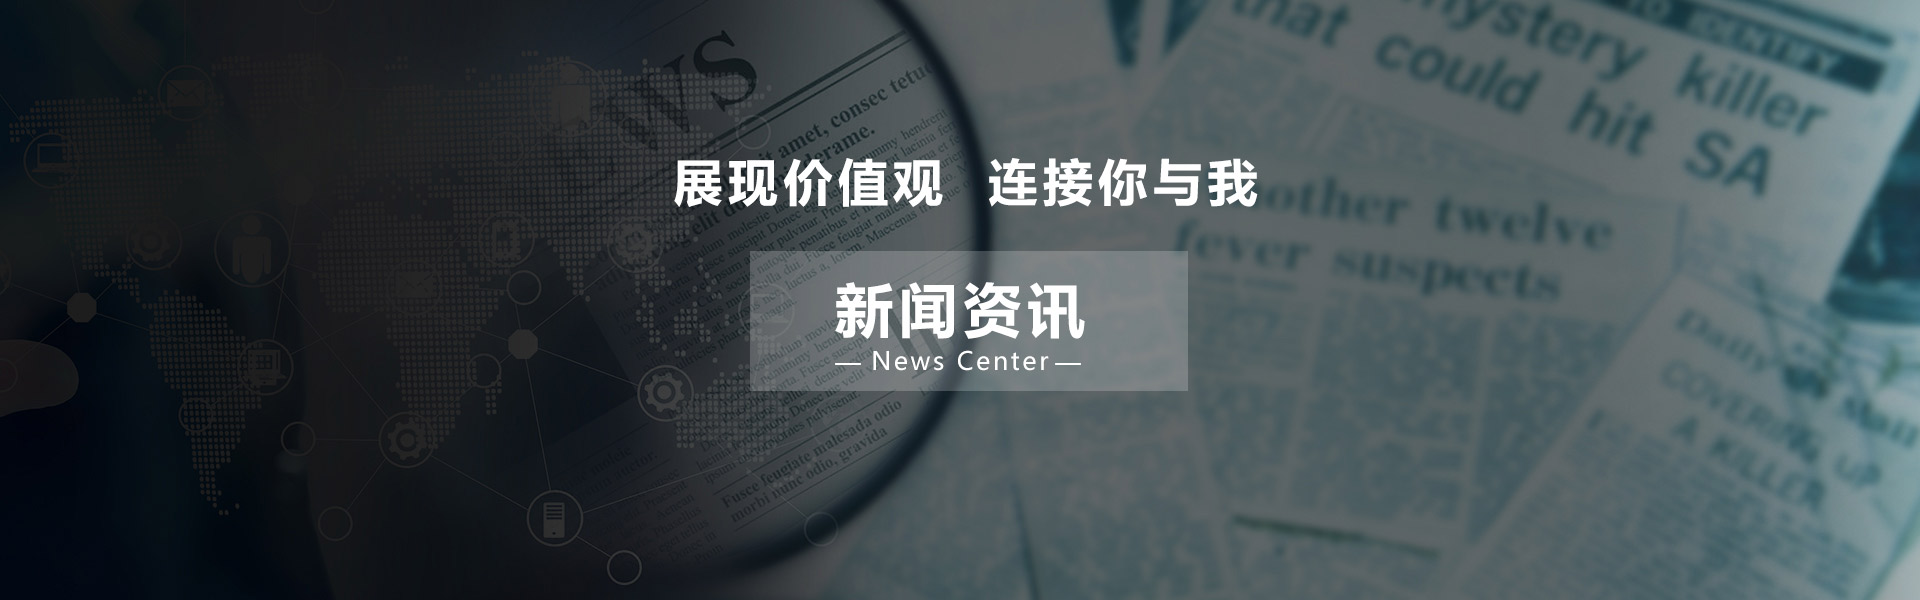 最新资讯_广东天谱电器有限公司官方网站_广东天谱电器有限公司